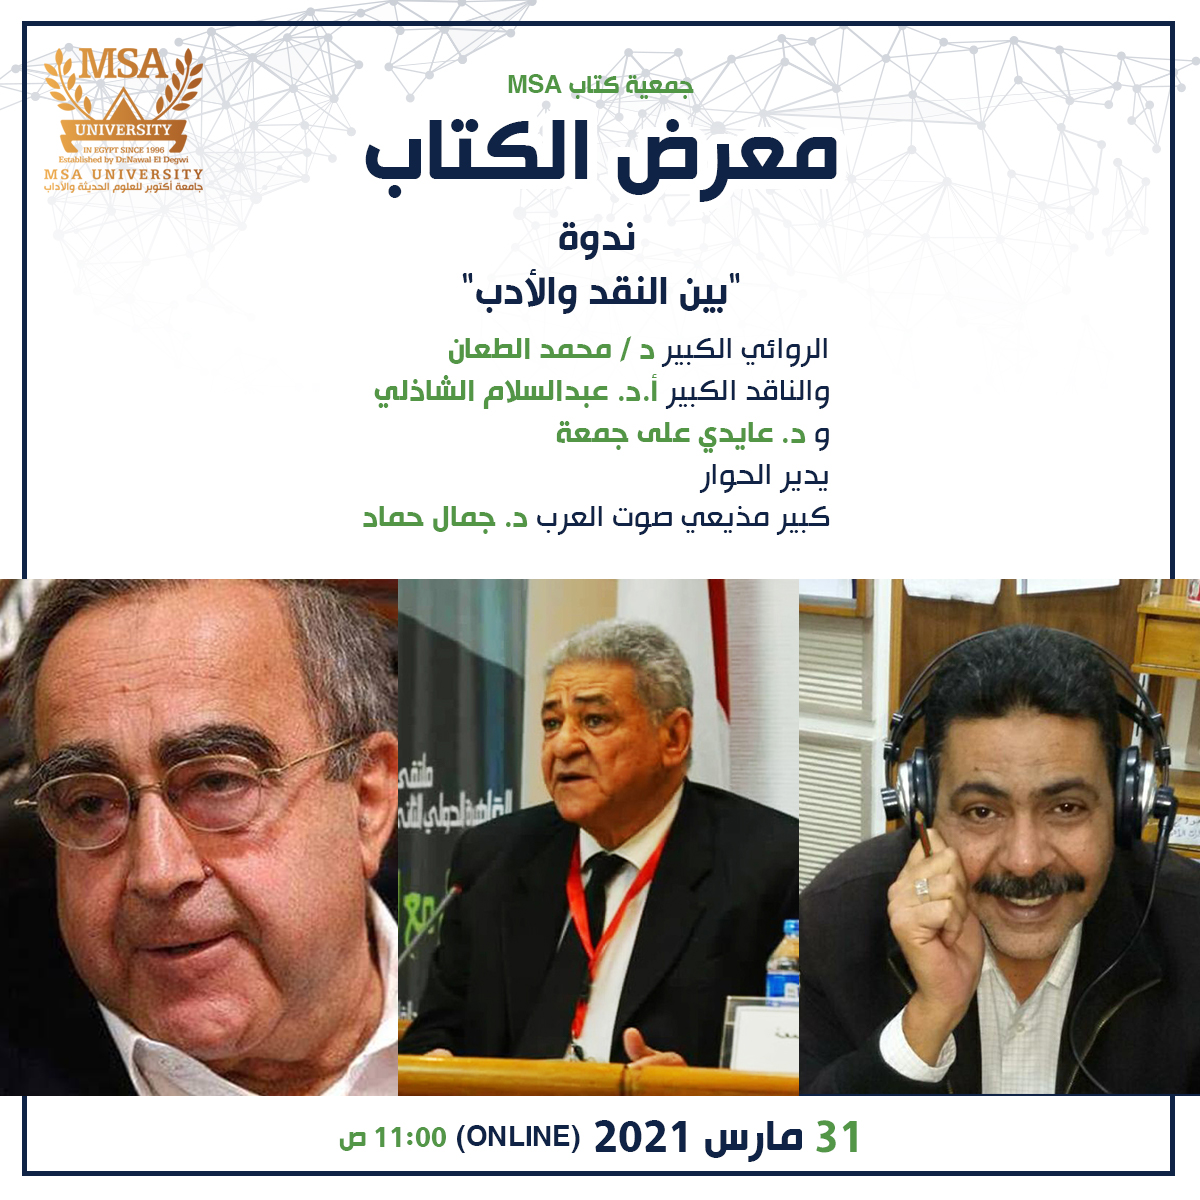 MSA University - Dr. Muhammed El Taan, Prof. Dr Abdel Salam El Shazly and Prof Dr. Ayedi Ali Gomaa 